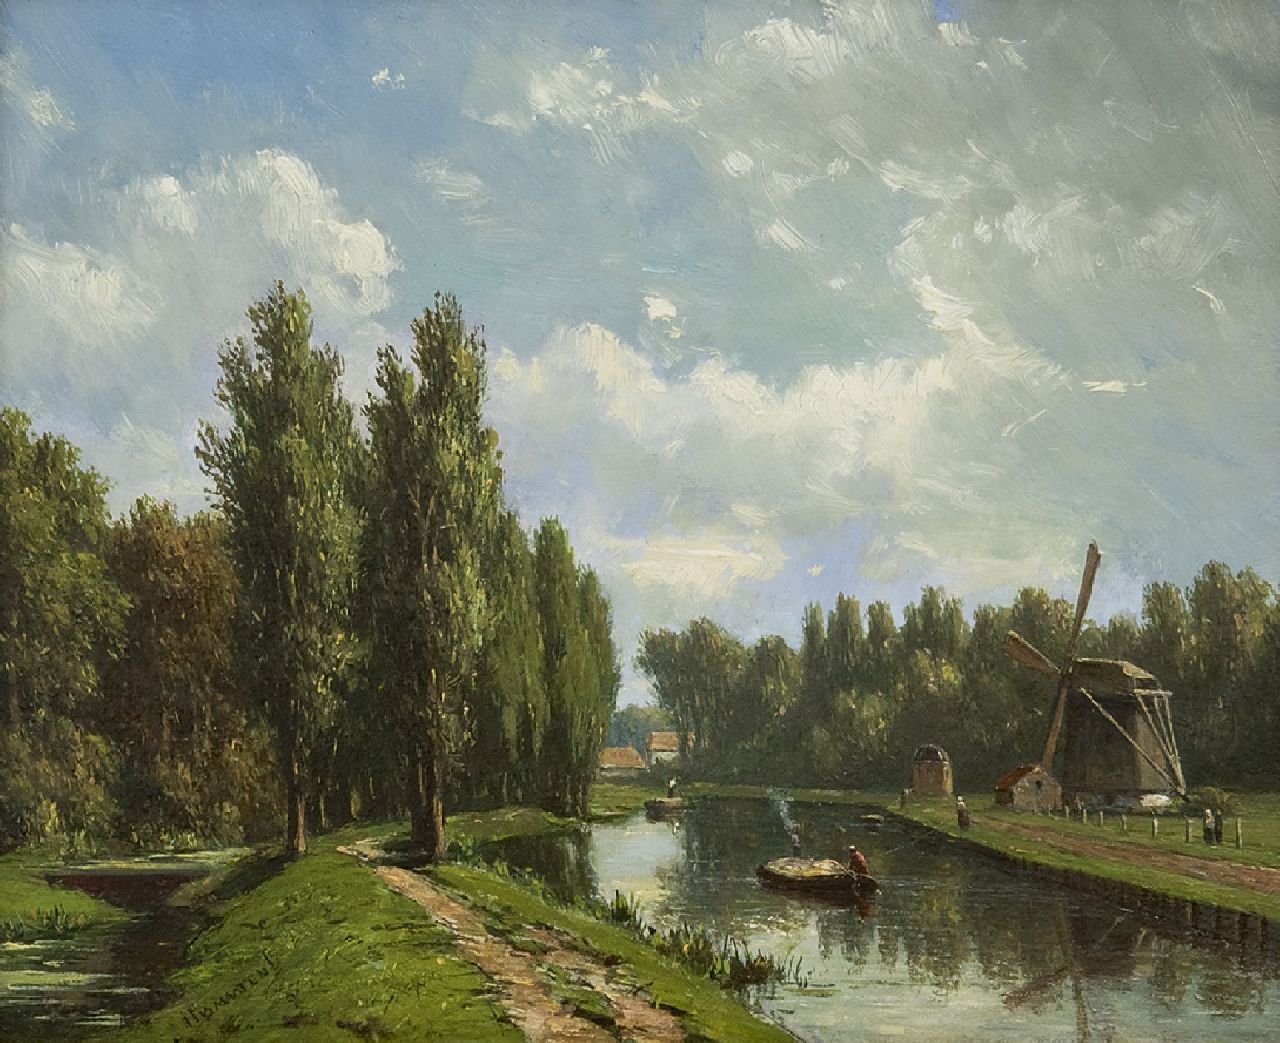 Maaten J.J. van der | Jacob Jan van der Maaten | Schilderijen te koop aangeboden | De Vliet bij Voorburg, olieverf op paneel 16,1 x 20,0 cm, gesigneerd linksonder